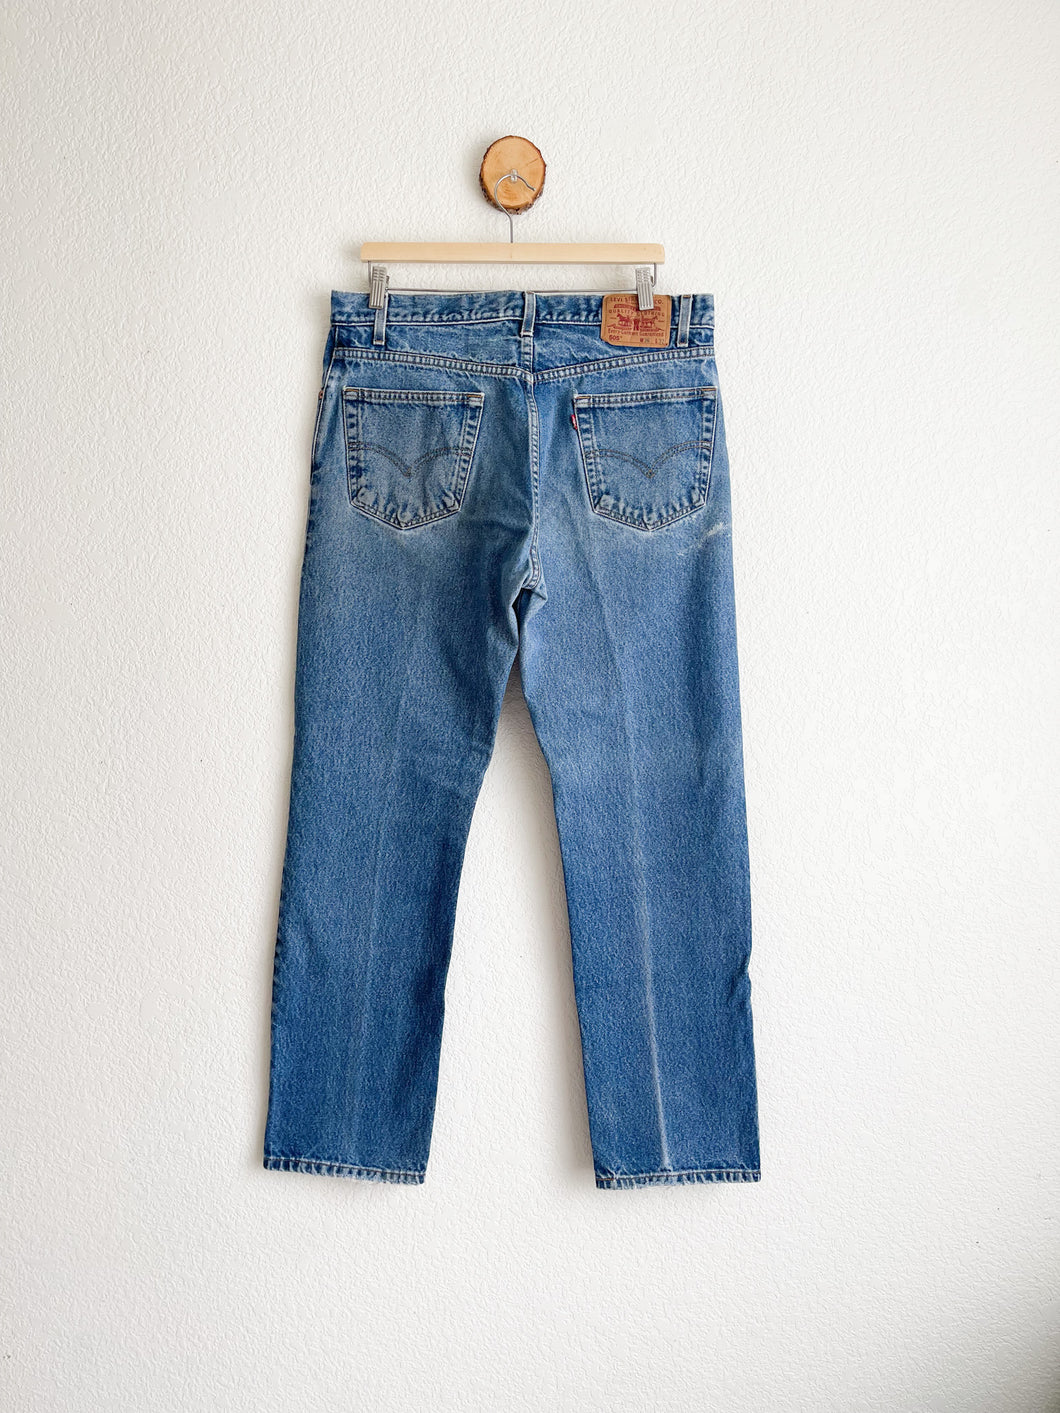 Vintage Levi's 505 Jeans - 35